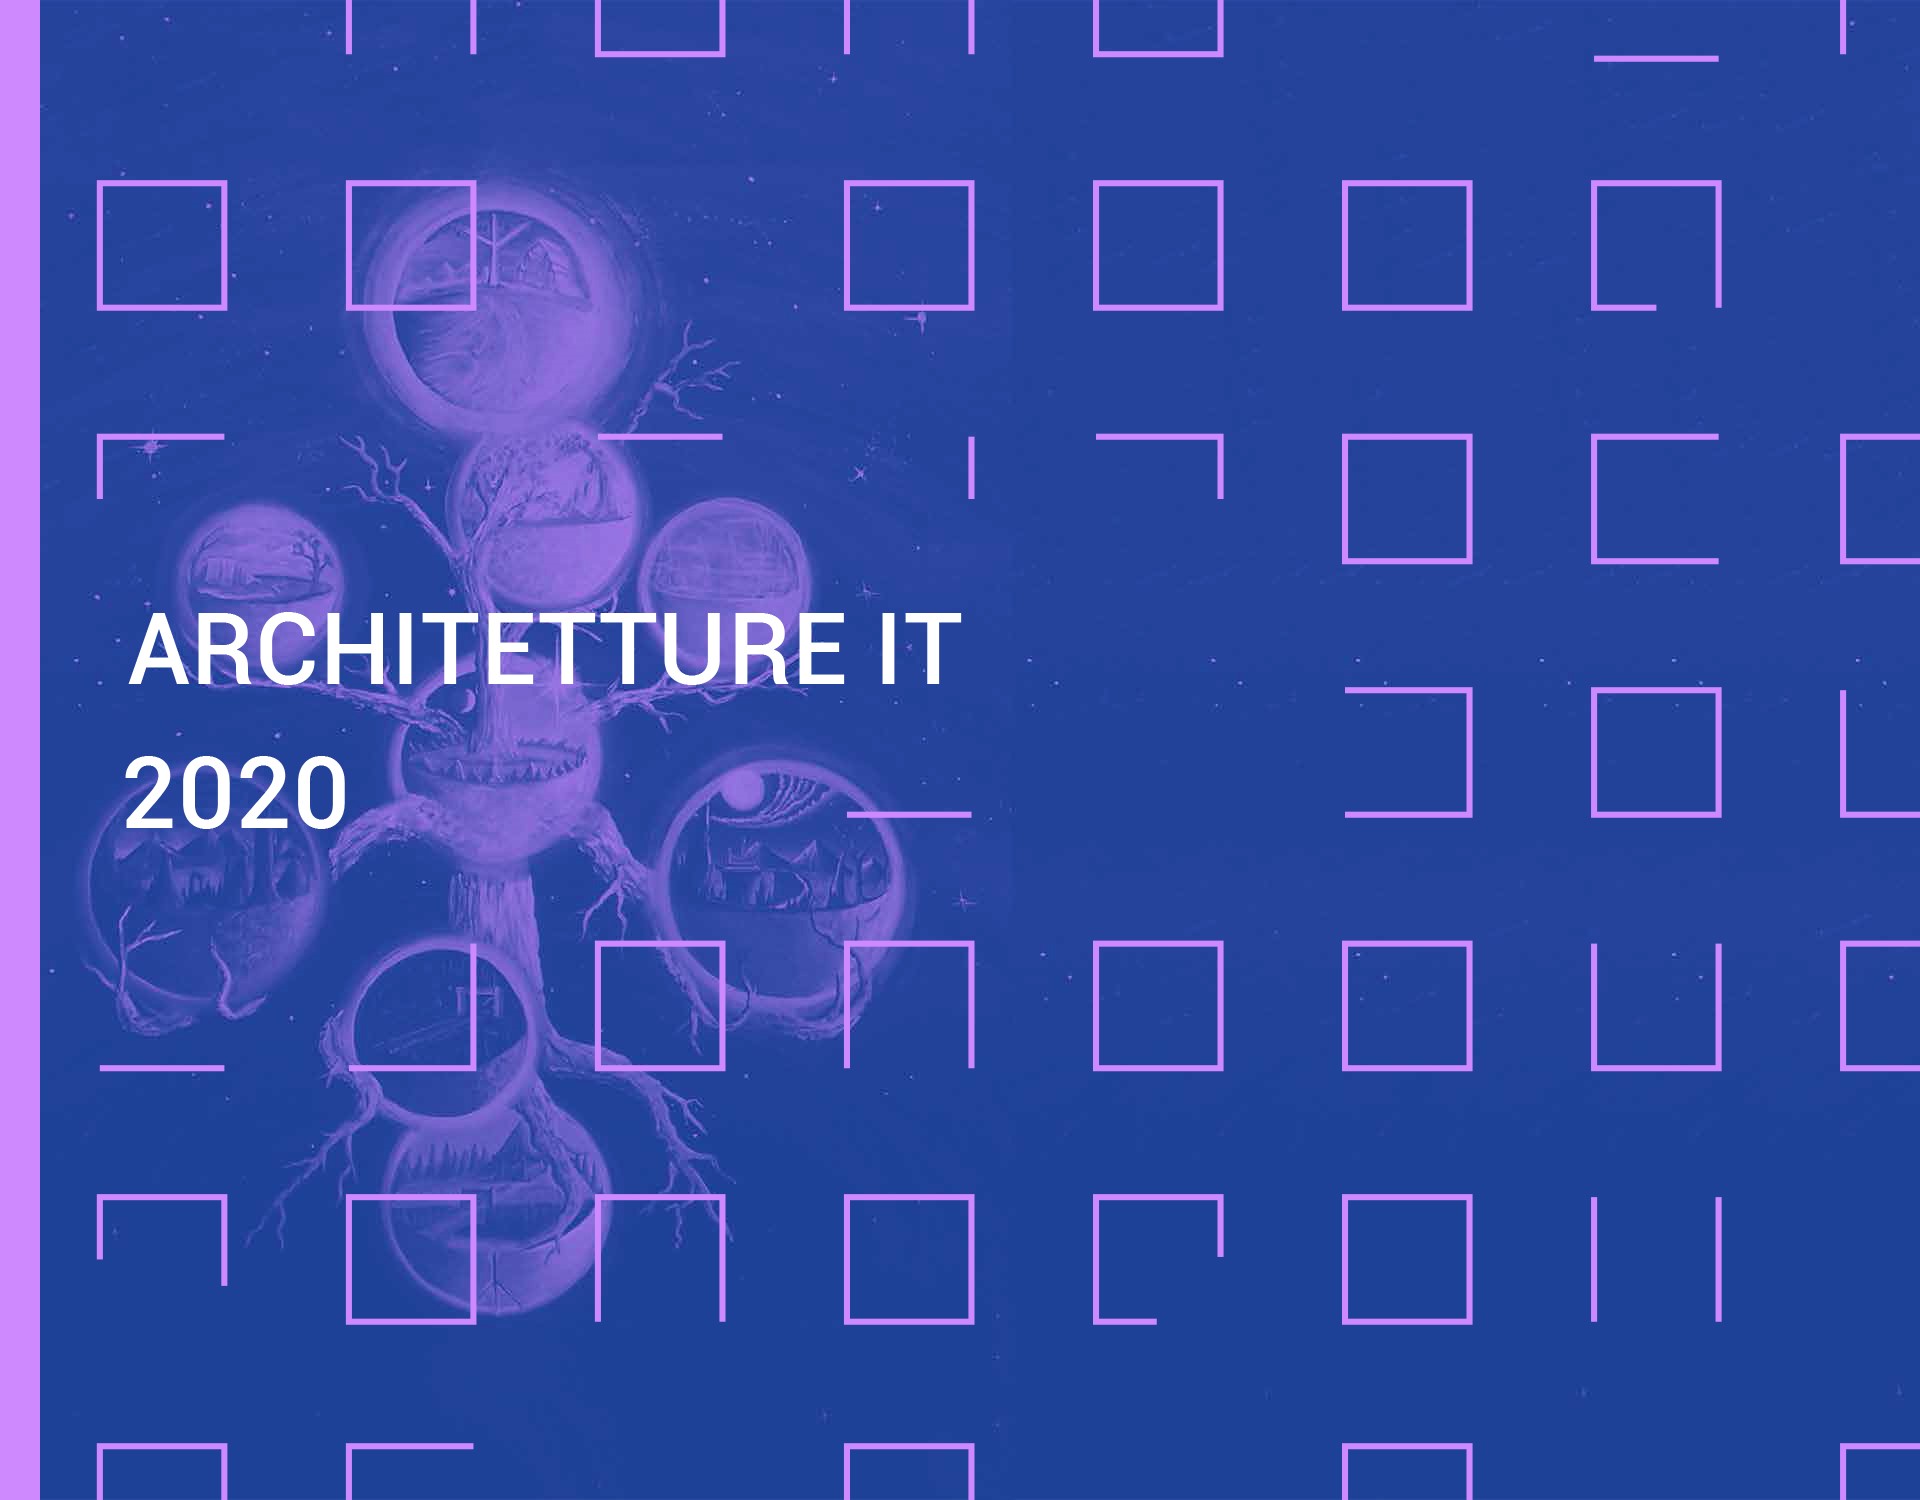 Rapporto Architetture IT in banca 2020 - Un Yggdrasill per l'Enterprise Architecture